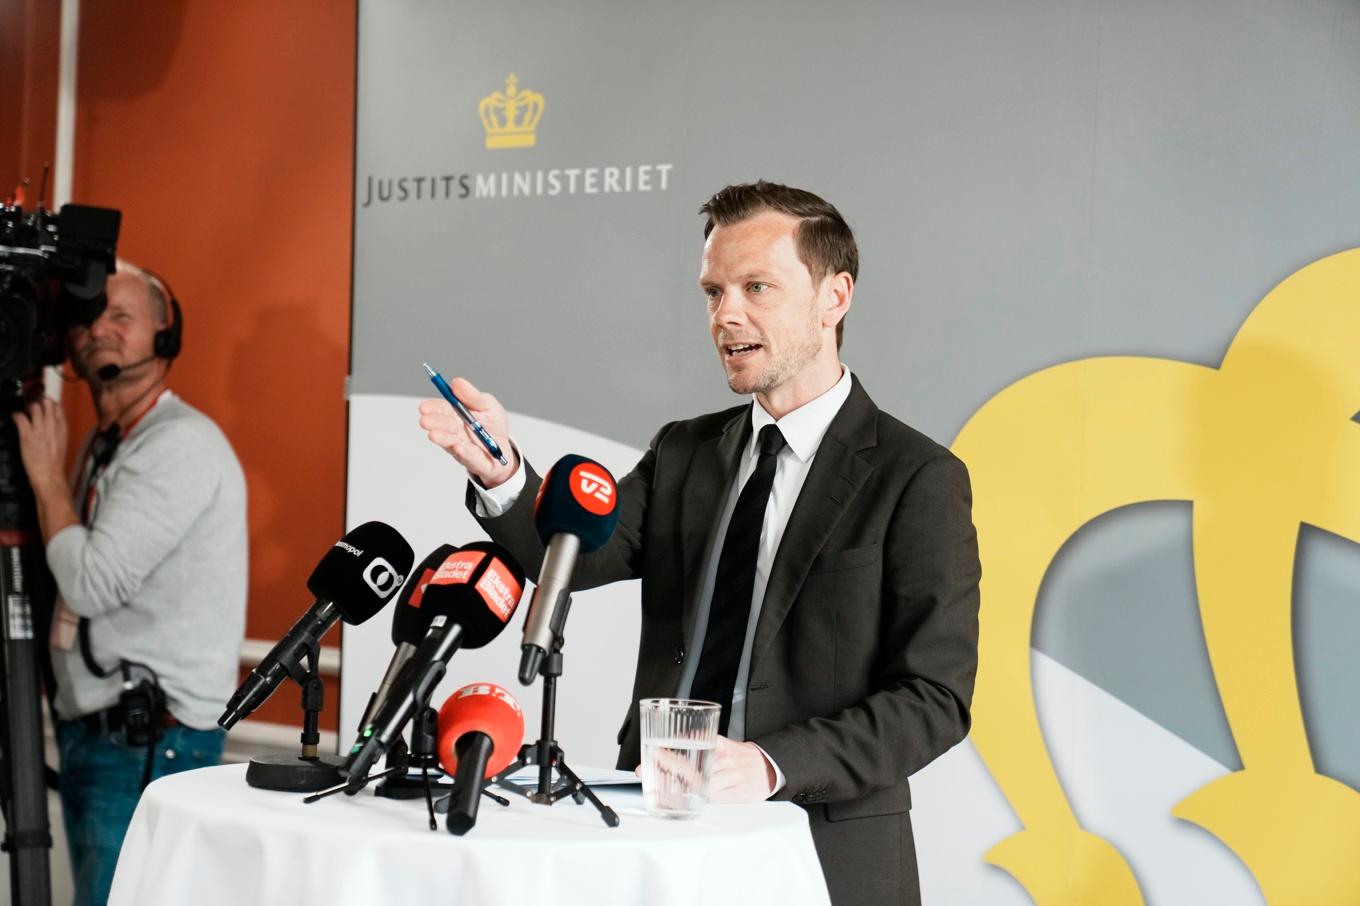 Danmarks justitiminister Peter Hummelgaard (S) talar på en pressträff om beslutet att försöka få det kriminella gänget Bandidos förbjudet. Foto: Thomas Traasdahl/Scanpix/Ritzau/TT